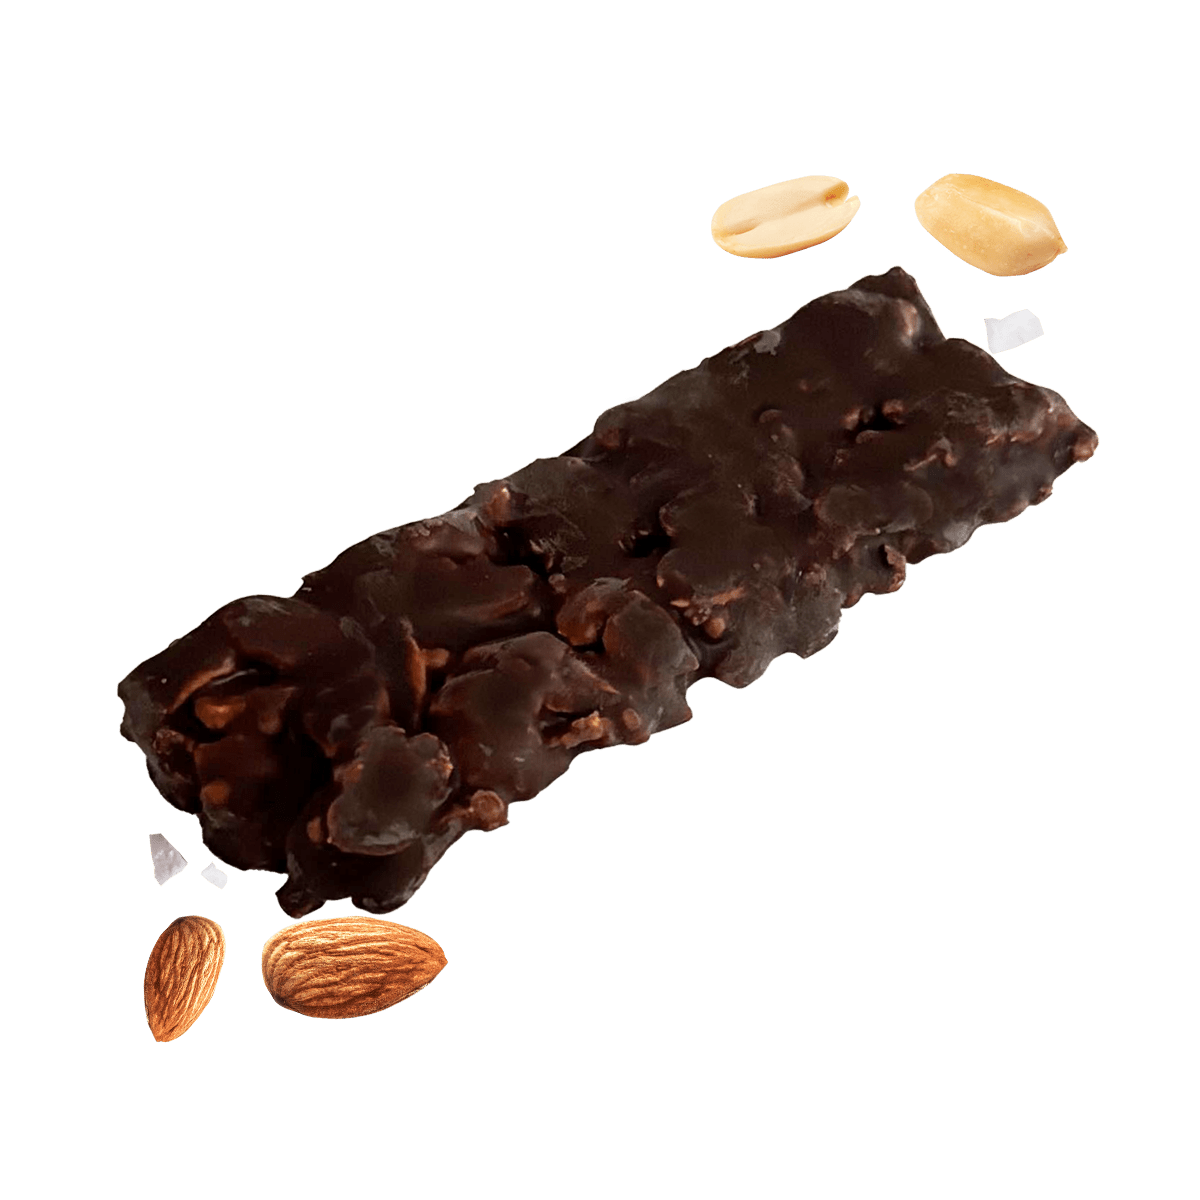 Just Legends Nussriegel Sea Salt & Dark Chocolate | Funktionaler, veganer Xmas Product auf Pulverbasis ohne Zucker, mit wenig Kalorien, vielen Vitaminen und natürlichen Aromen.